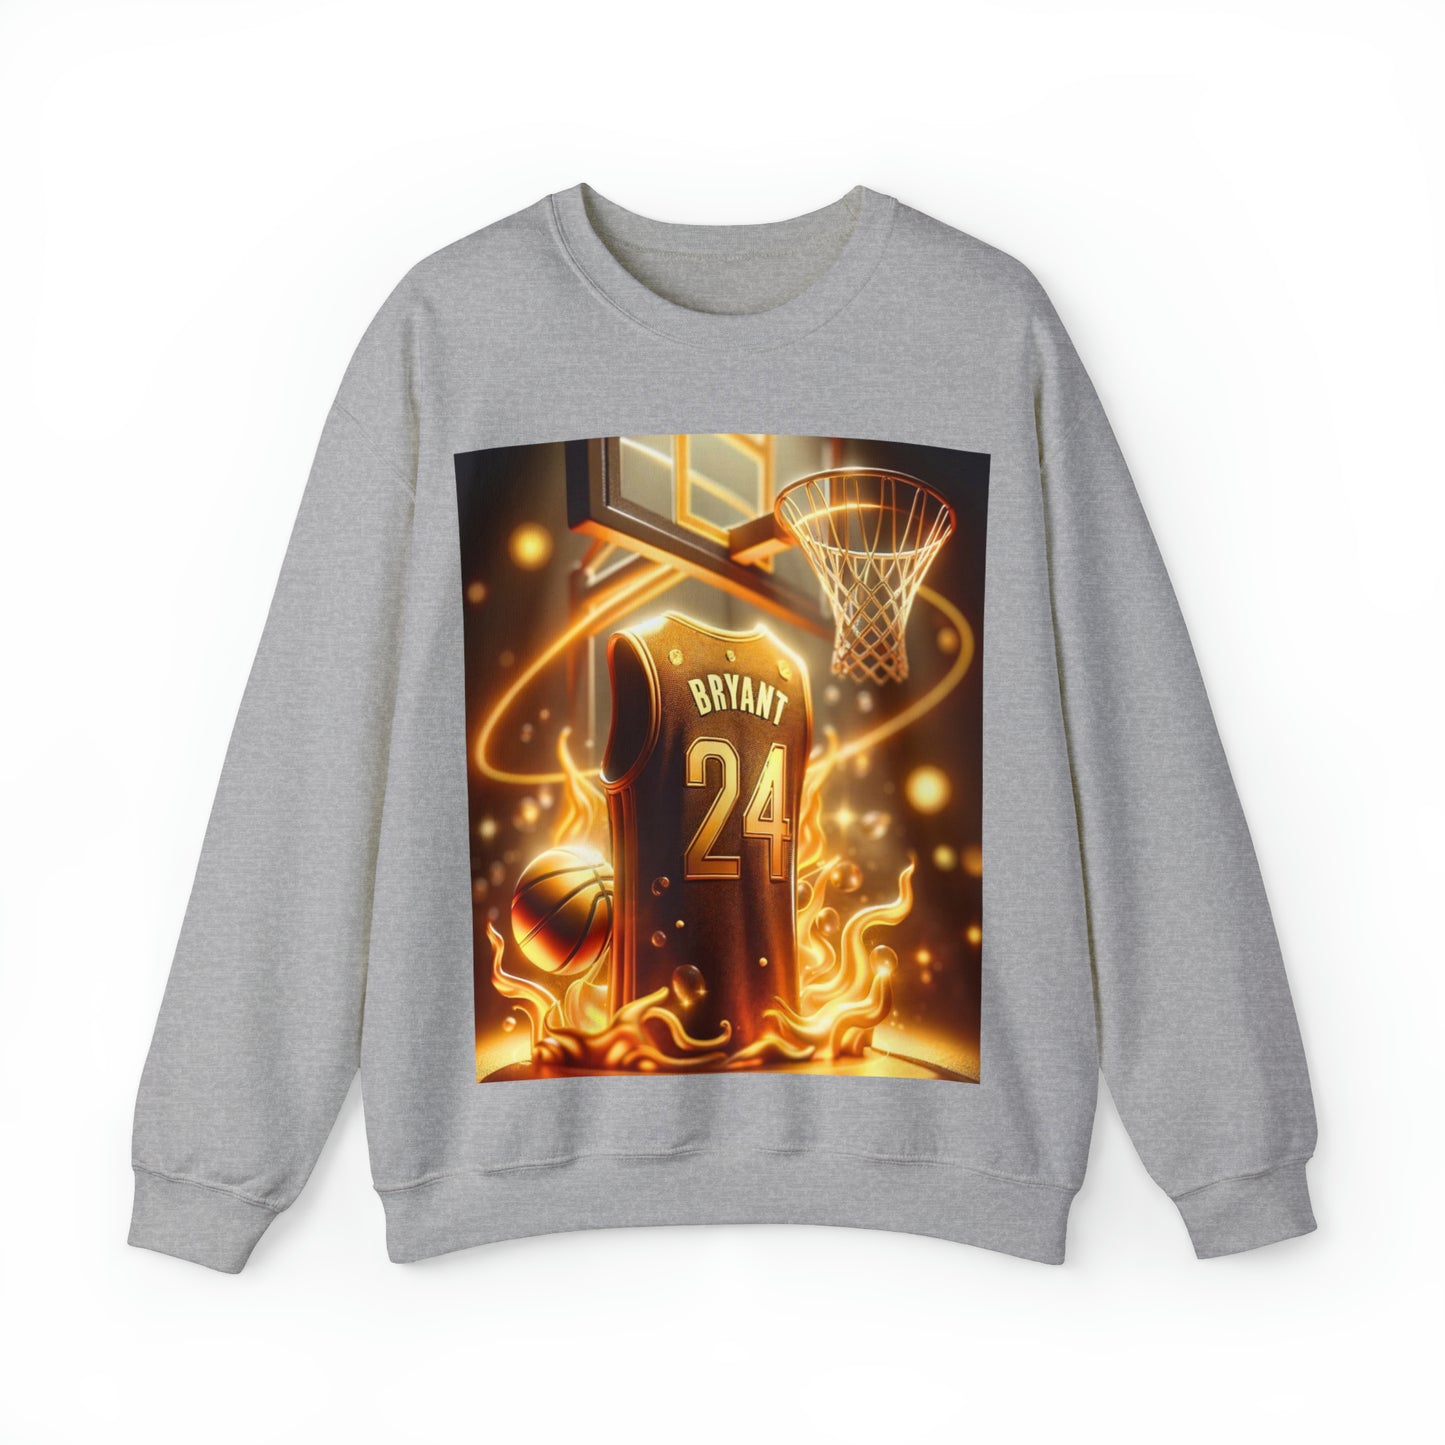 Kobe Bryant Tribute Sweater